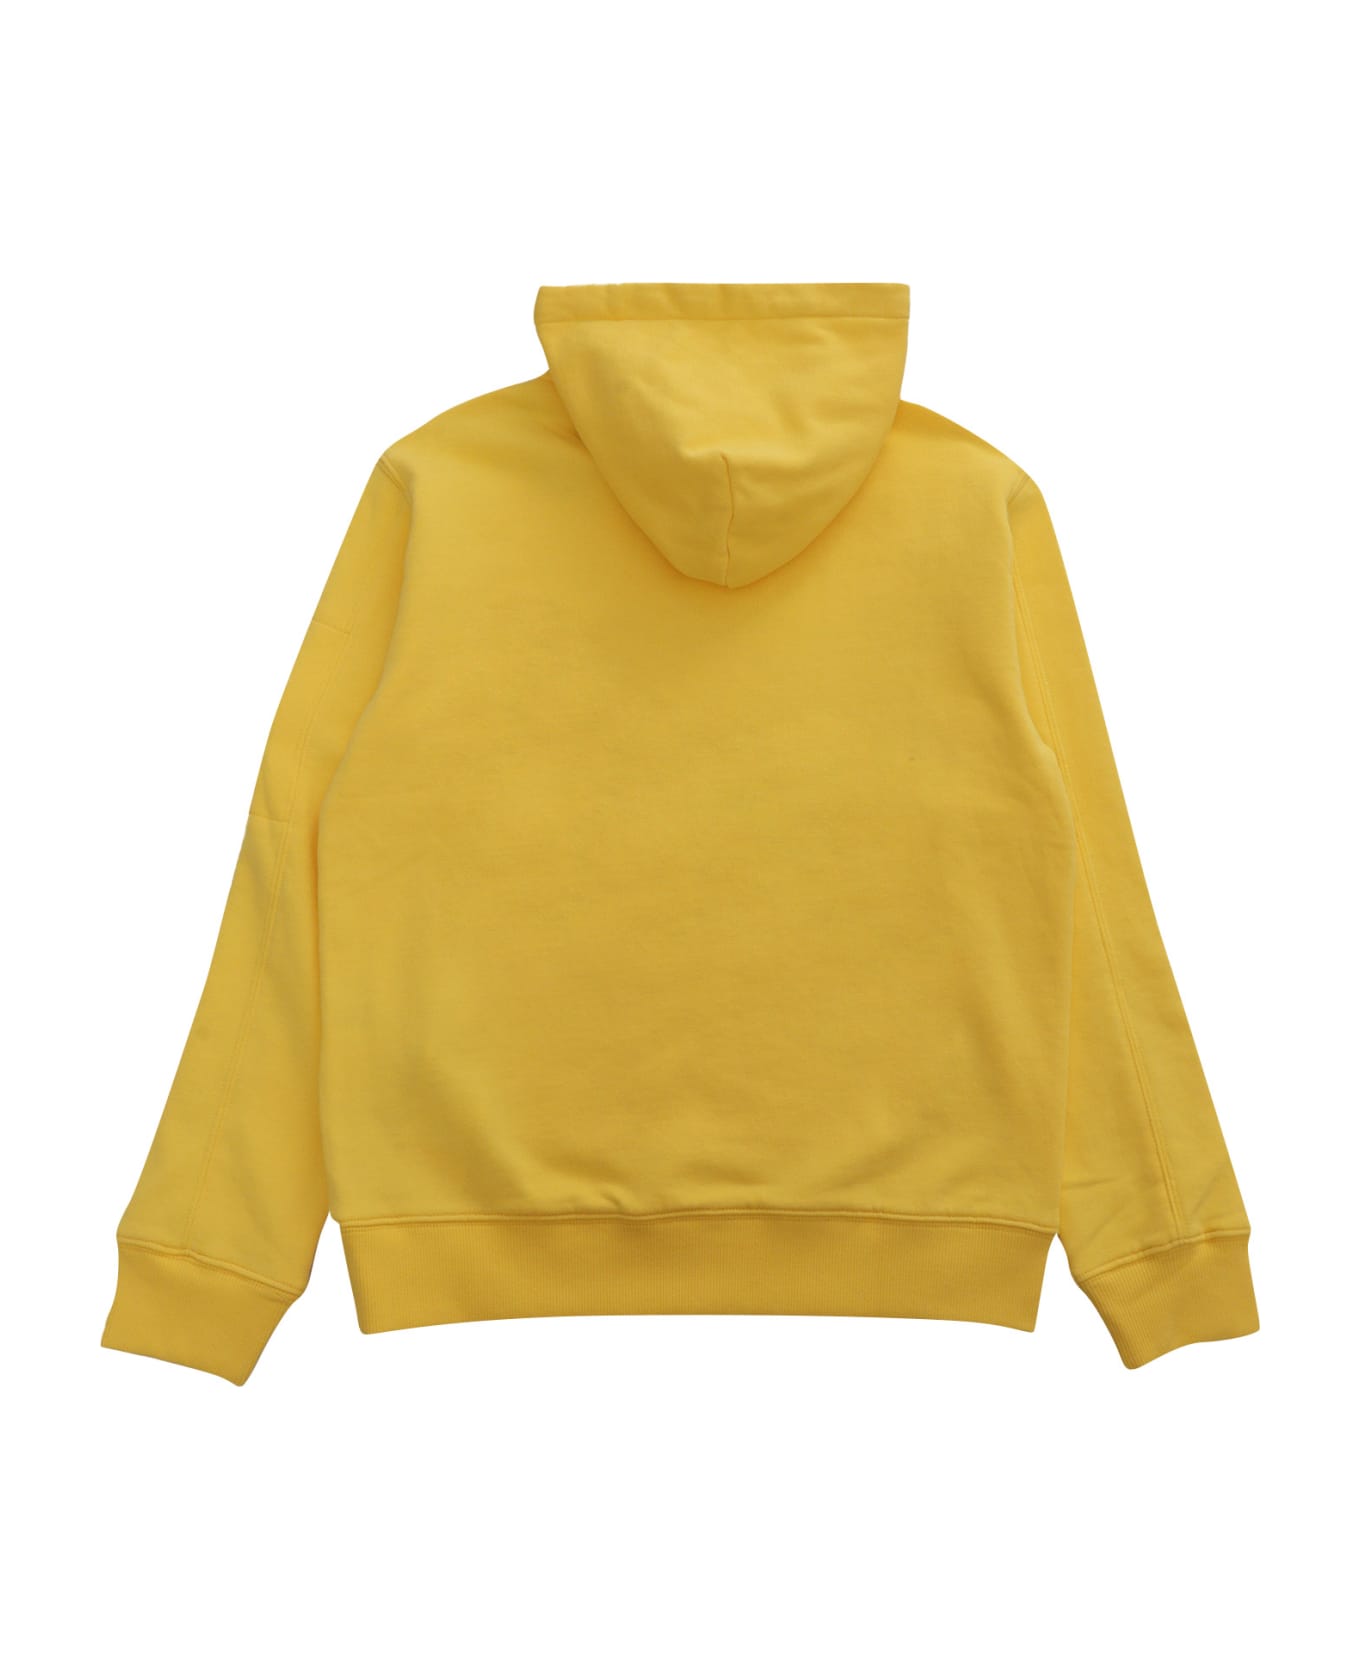 C.P. Company Undersixteen Yellow Sweatshirt - YELLOW